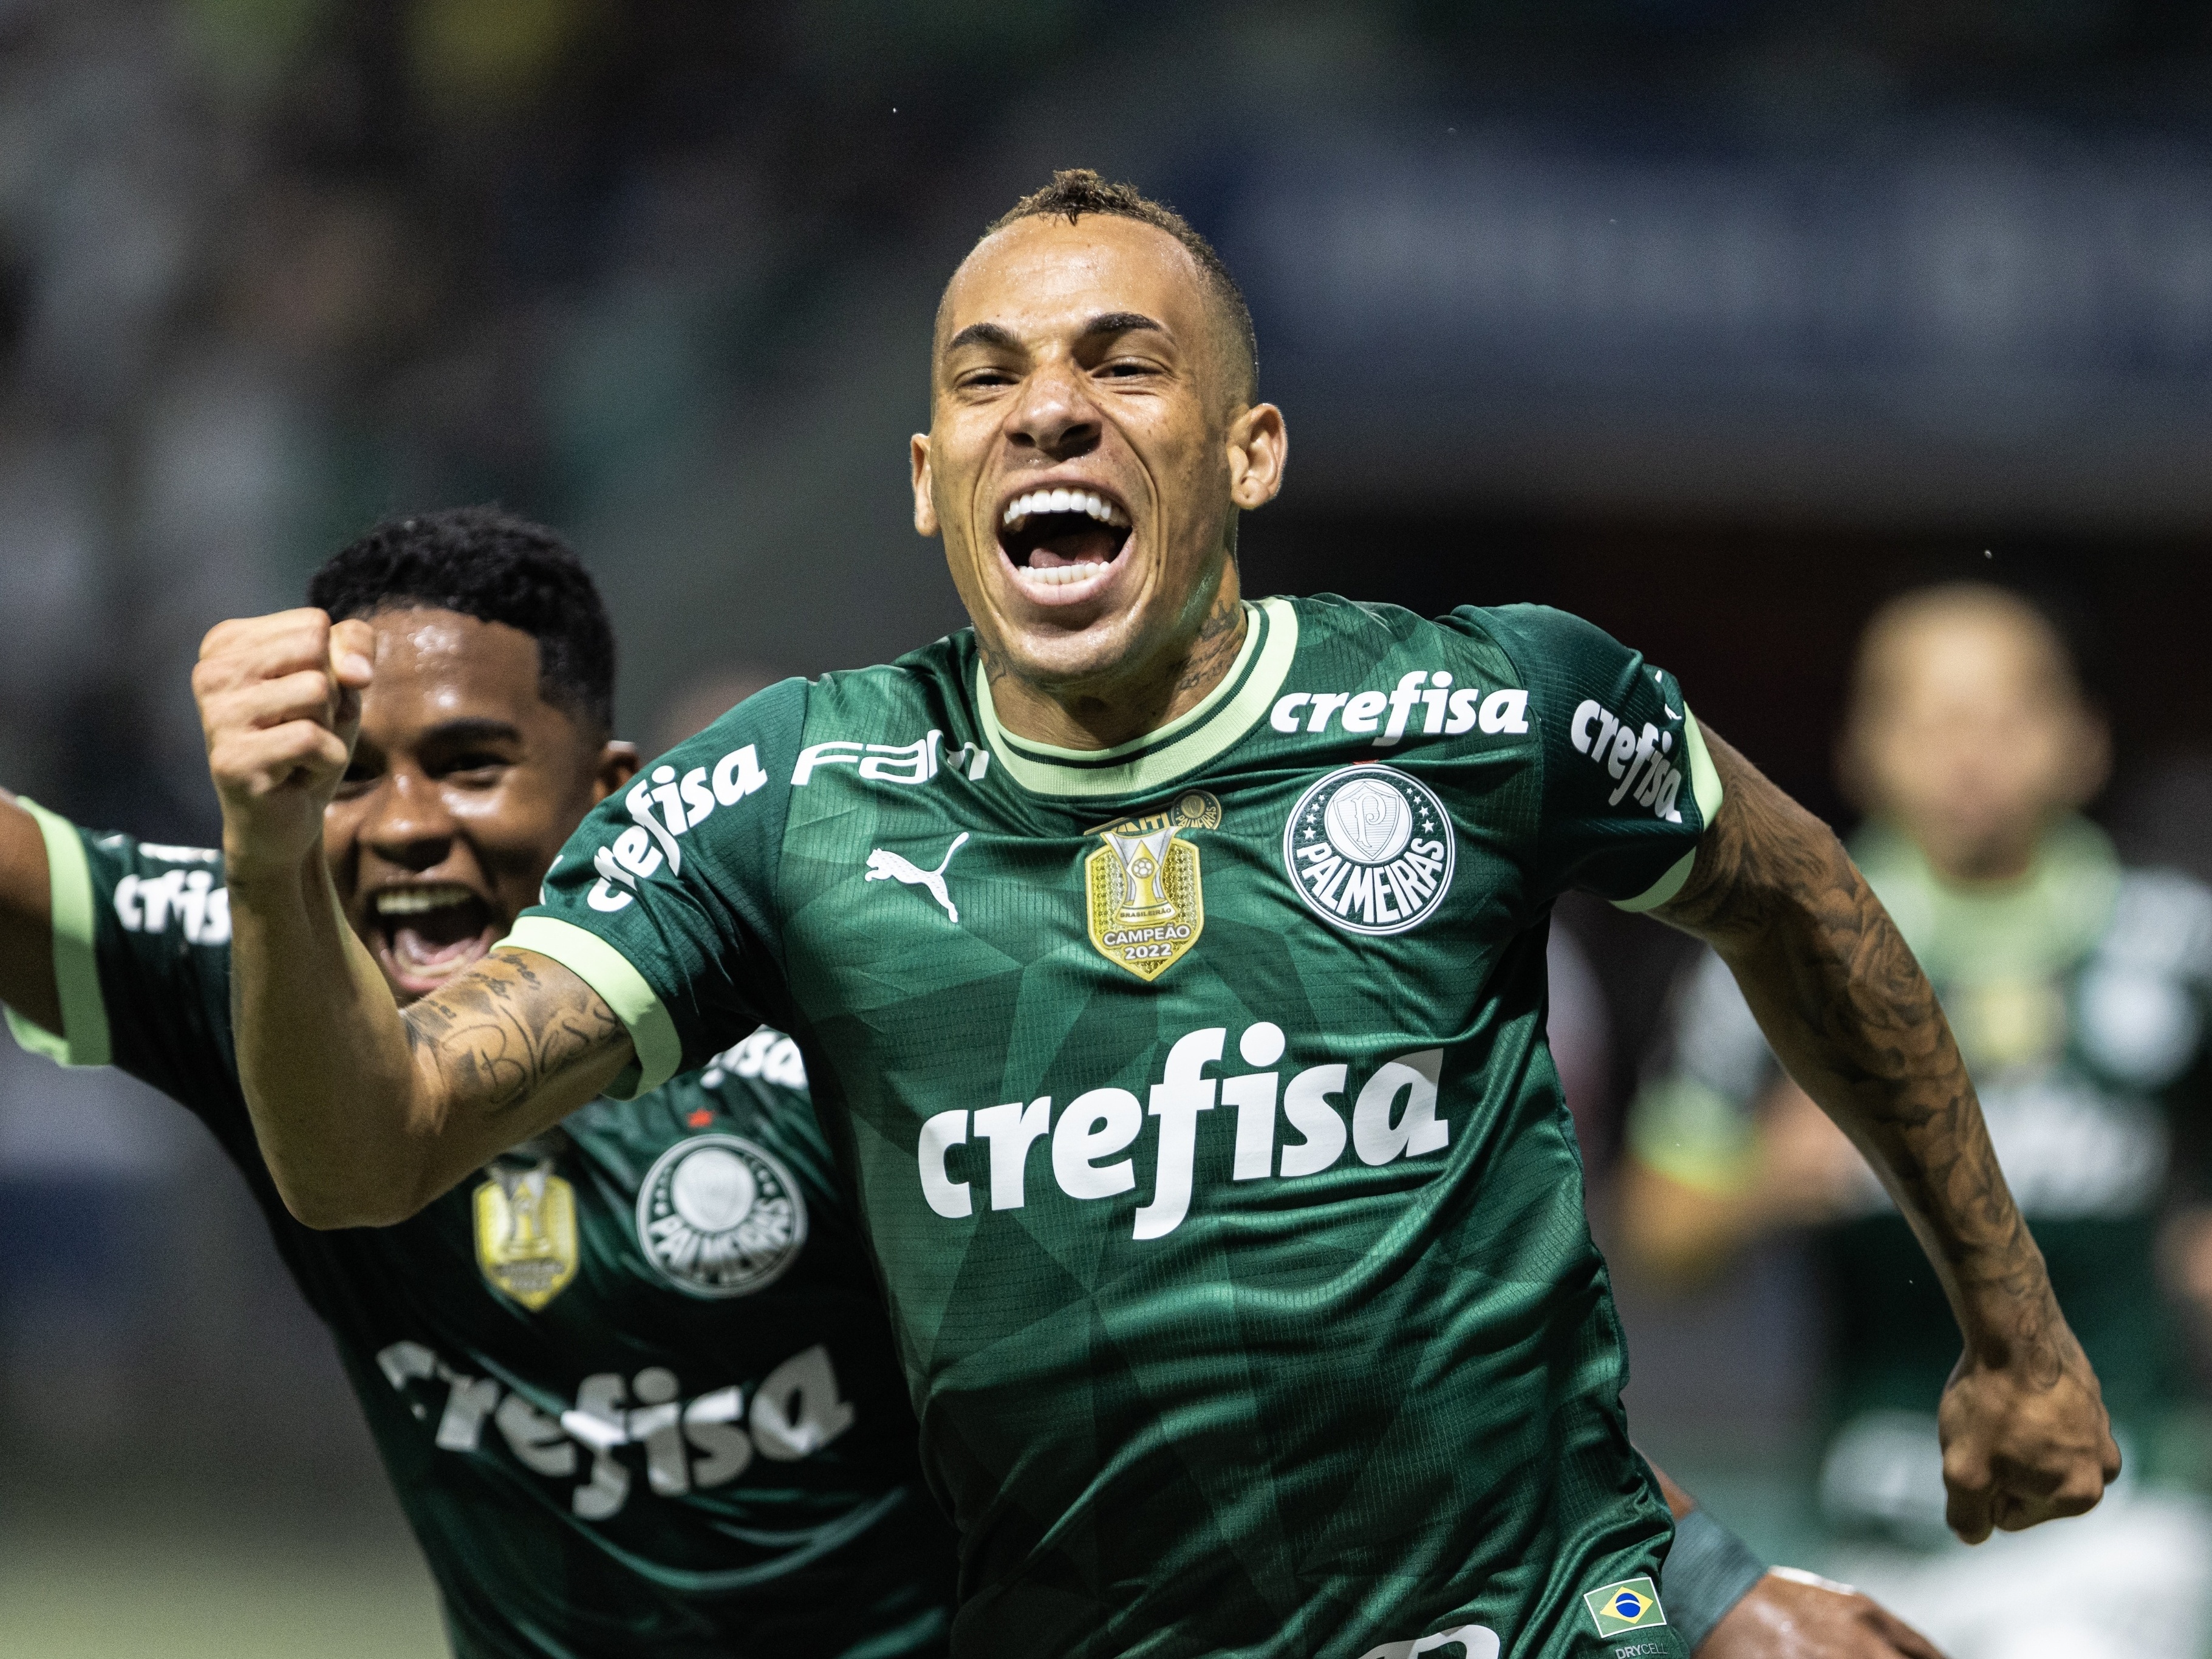 Palmeiras massacra São Paulo e conquista o Paulista pela 24ª vez